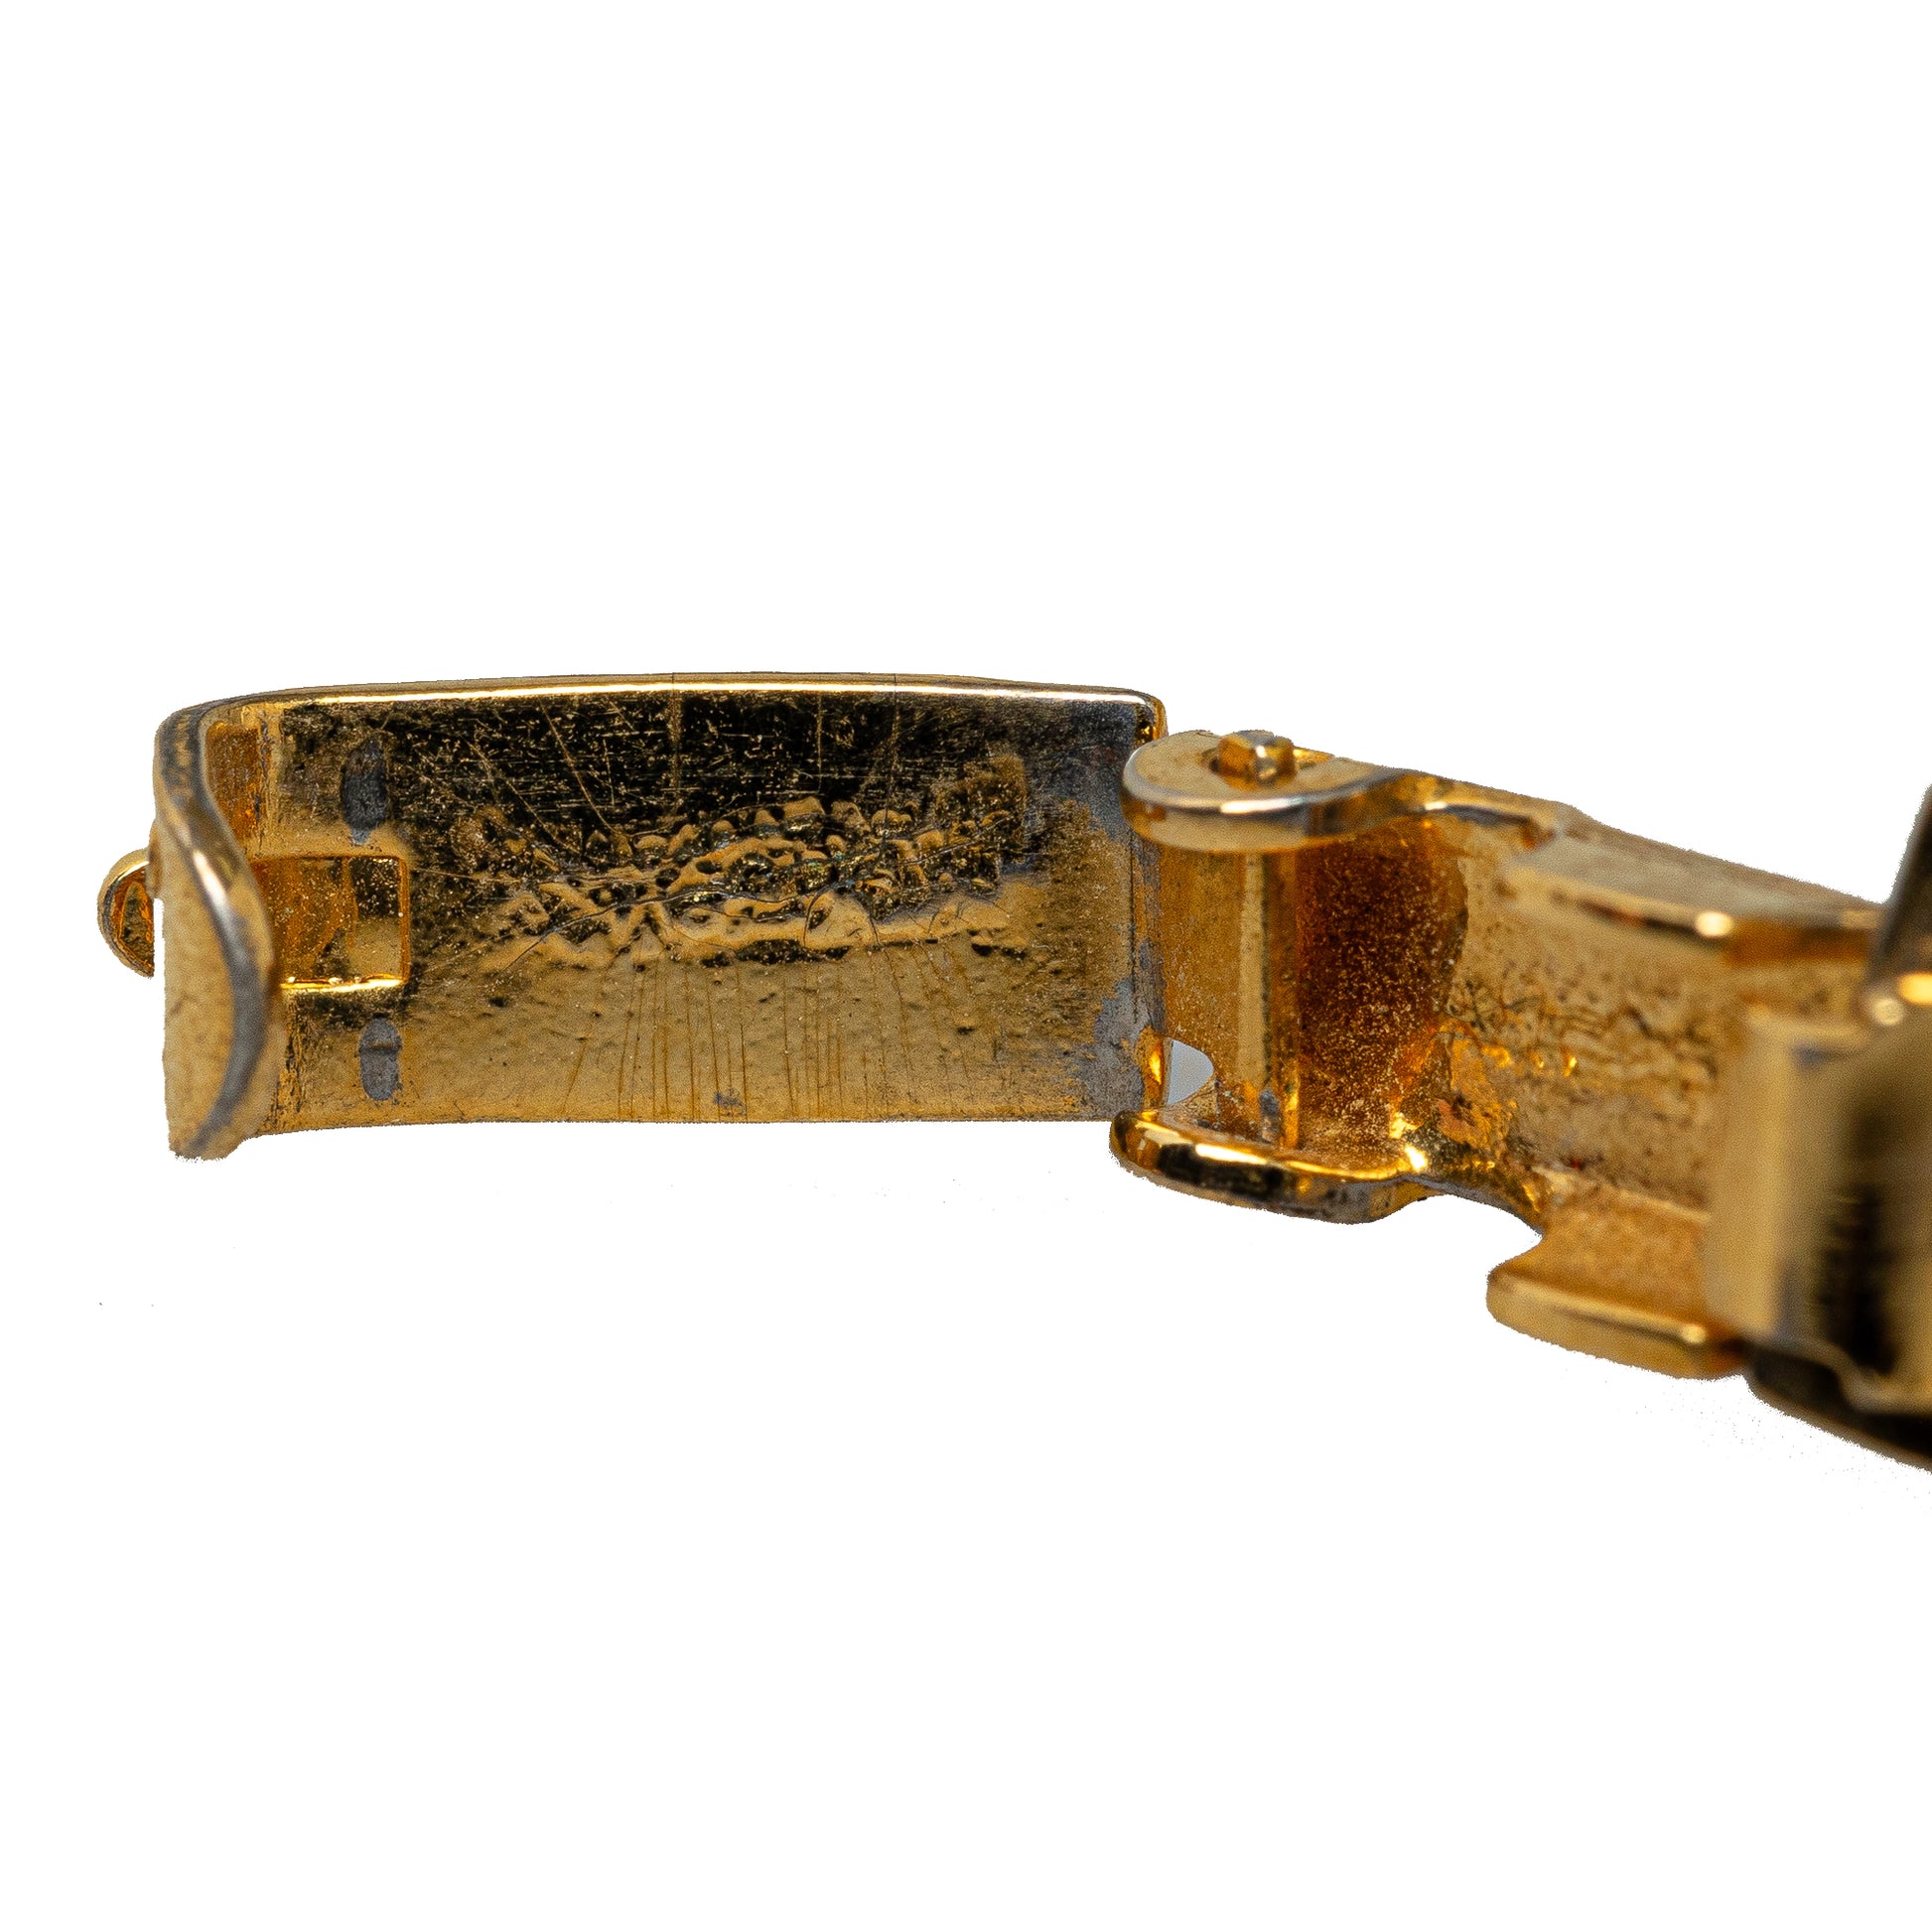 Horse Carriage Chain Bracelet Gold - Gaby Paris